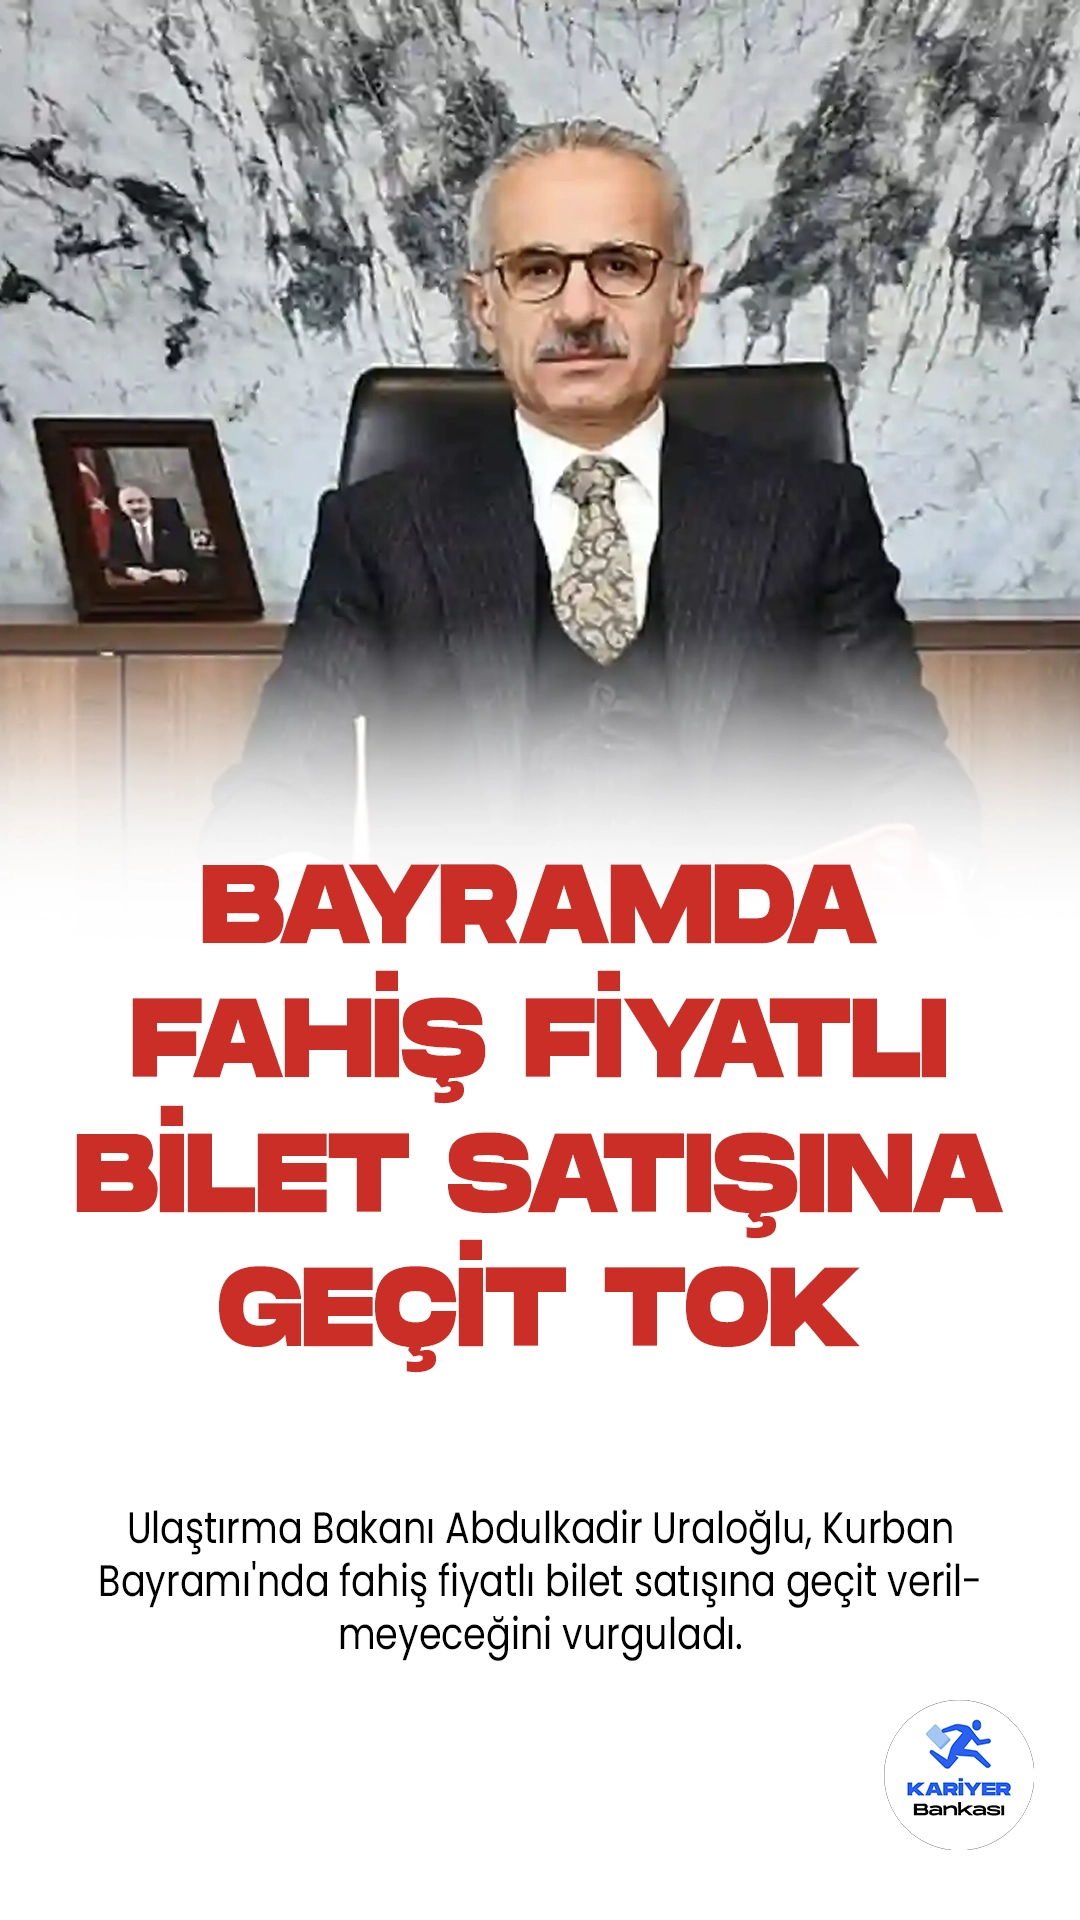 Ulaştırma Bakanı Abdulkadir Uraloğlu, Kurban Bayramı'nda fahiş fiyatlı bilet satışına geçit verilmeyeceğini vurguladı.